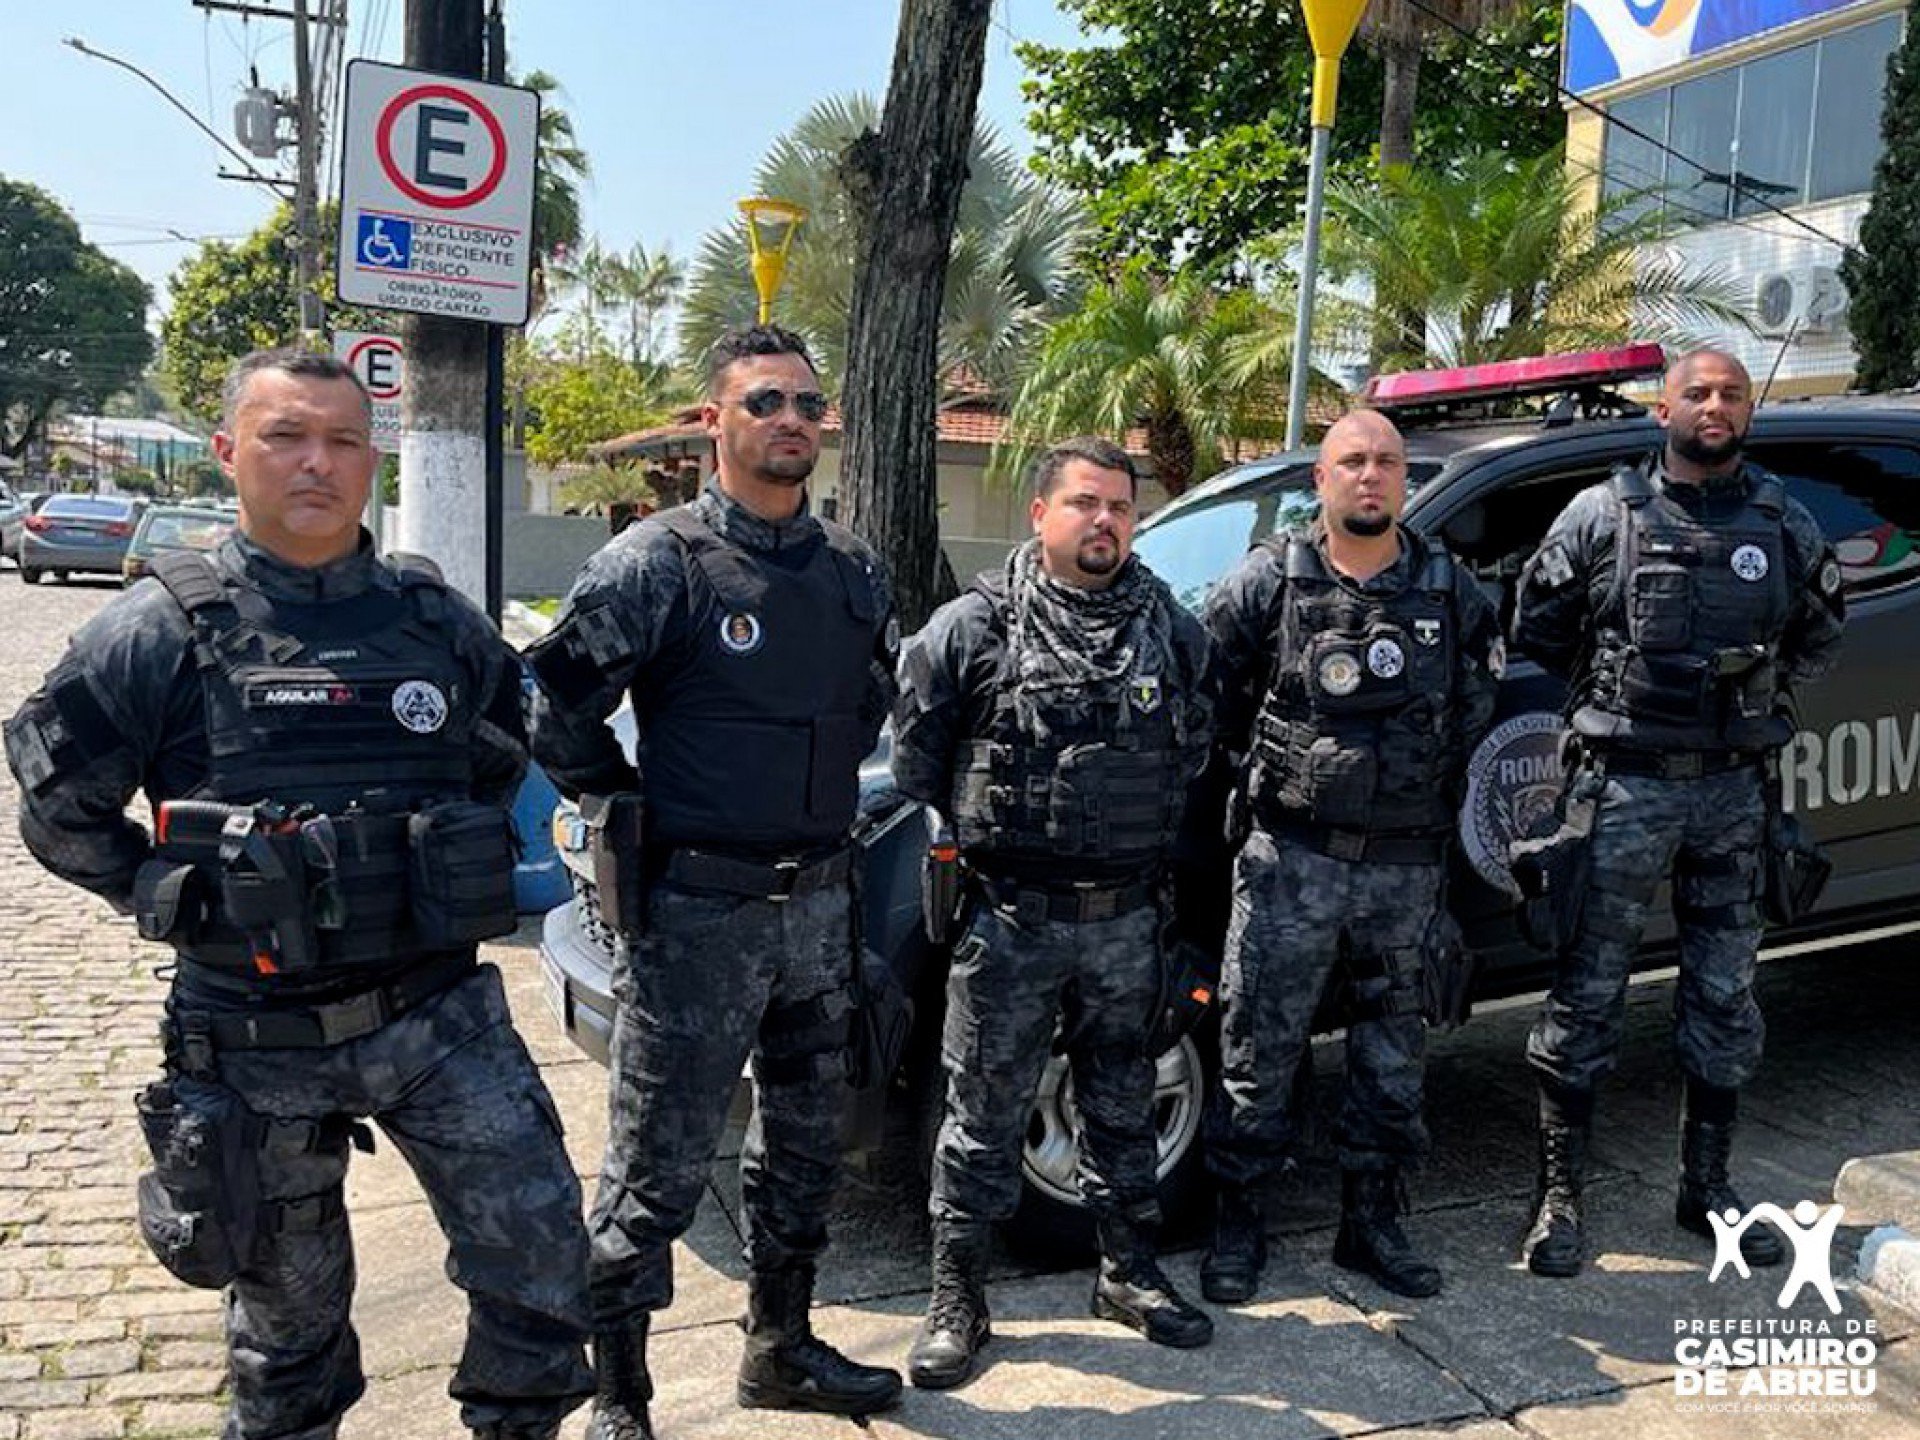 Duas ações criminosas foram denunciadas pela central 153 e tiveram uma resposta rápida da equipe da ROMU de Casimiro de Abreu - Divulgação